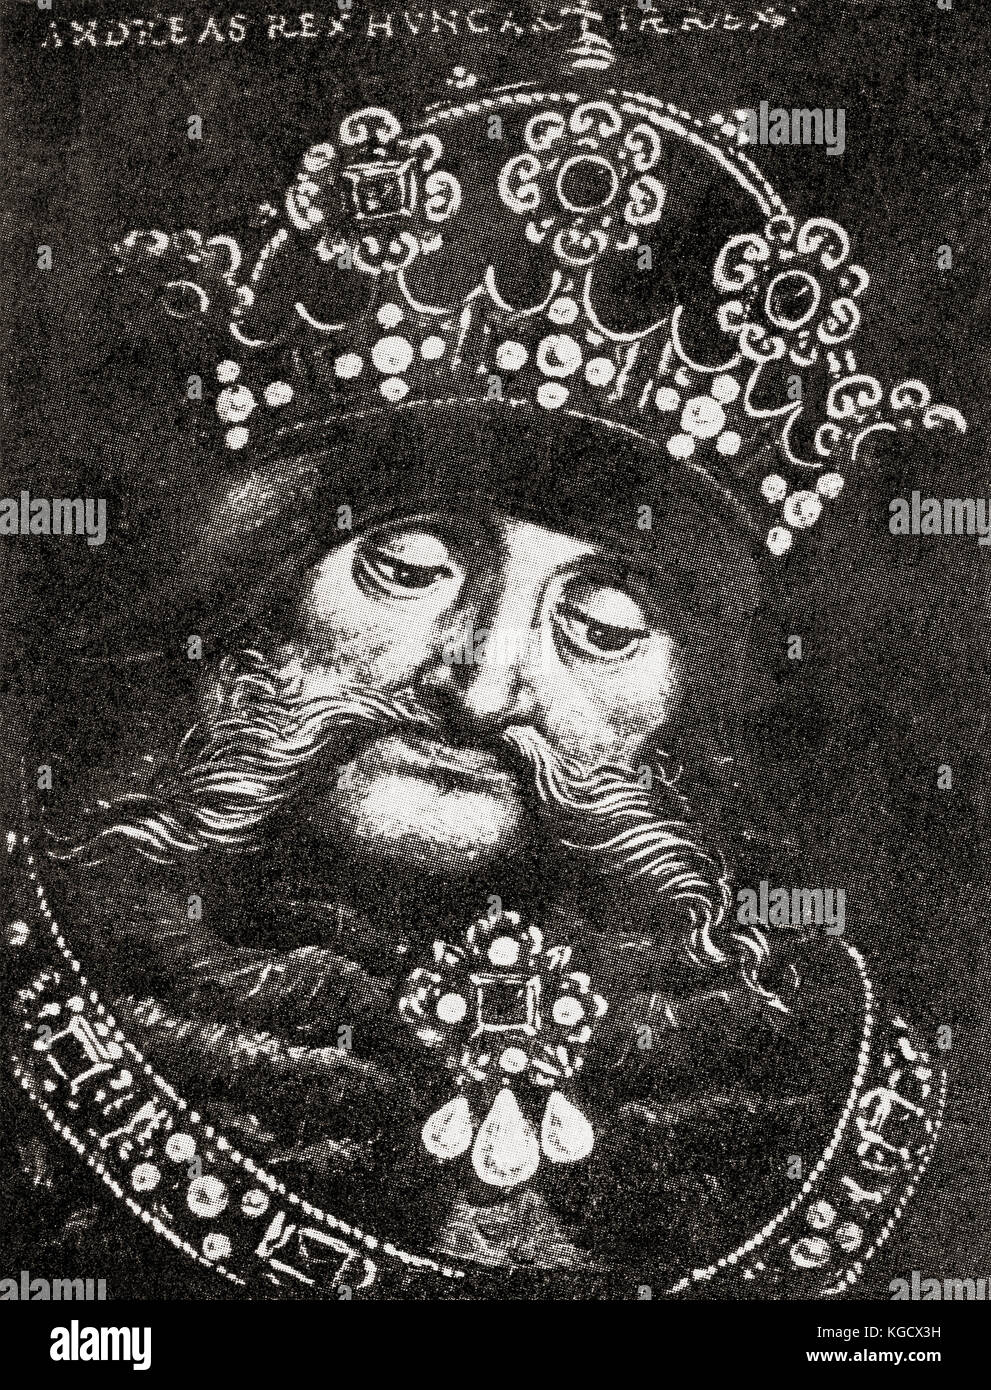 Andrew III de Hongrie alias Andrew III le Venetian, c. 1265 – 1301. Roi de Hongrie et de Croatie entre 1290 et 1301. De l'Histoire des Nations de Hutchinson, publié en 1915. Banque D'Images